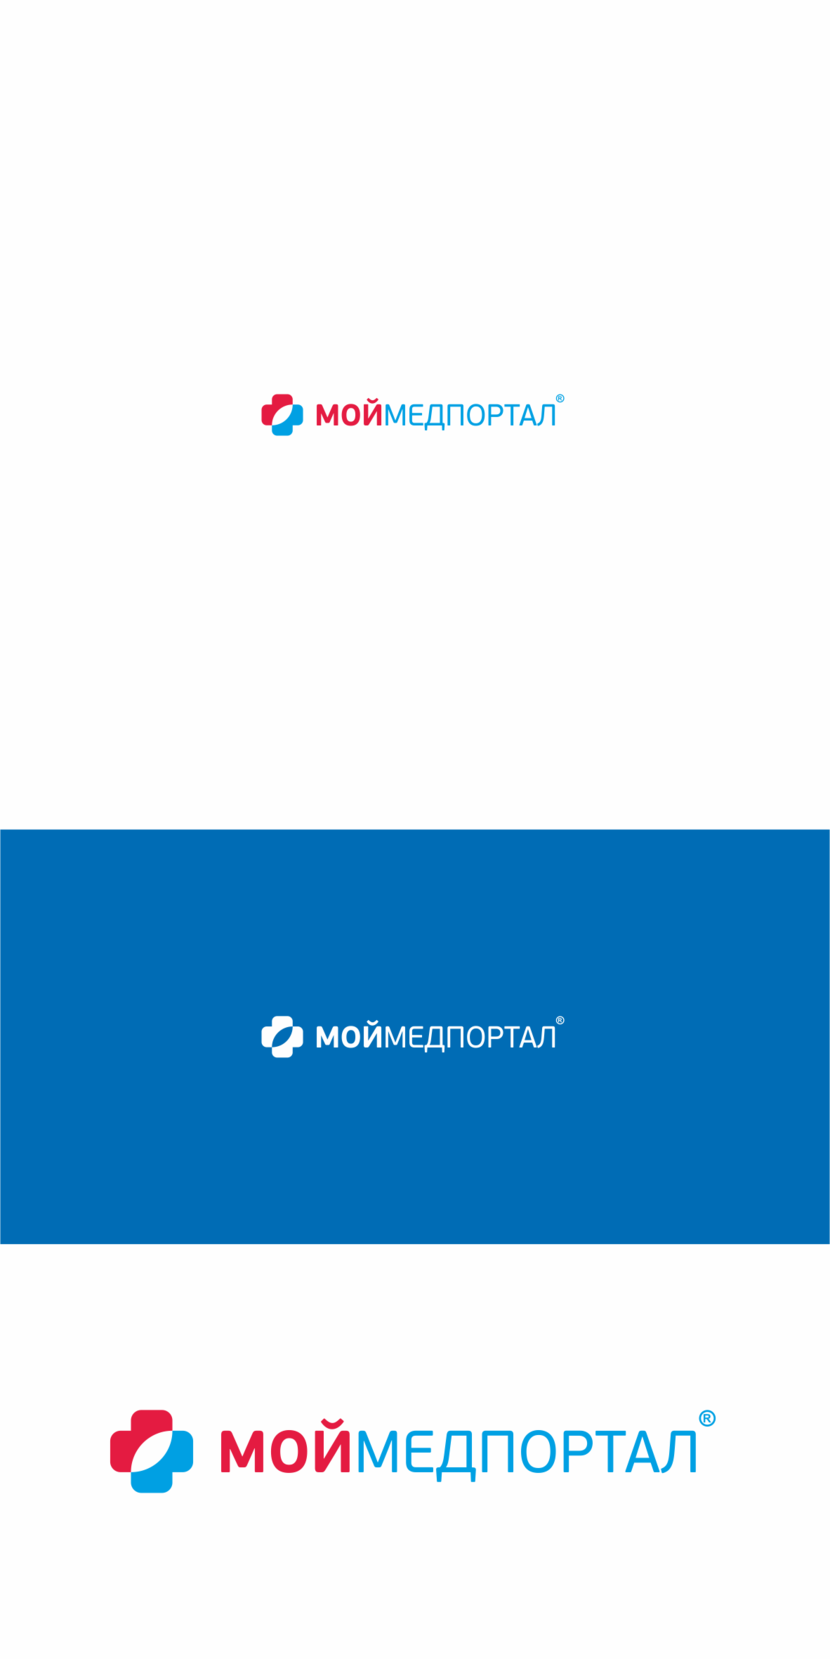 + - Разработка логотипа для медицинского портала онлайн записи в больницу